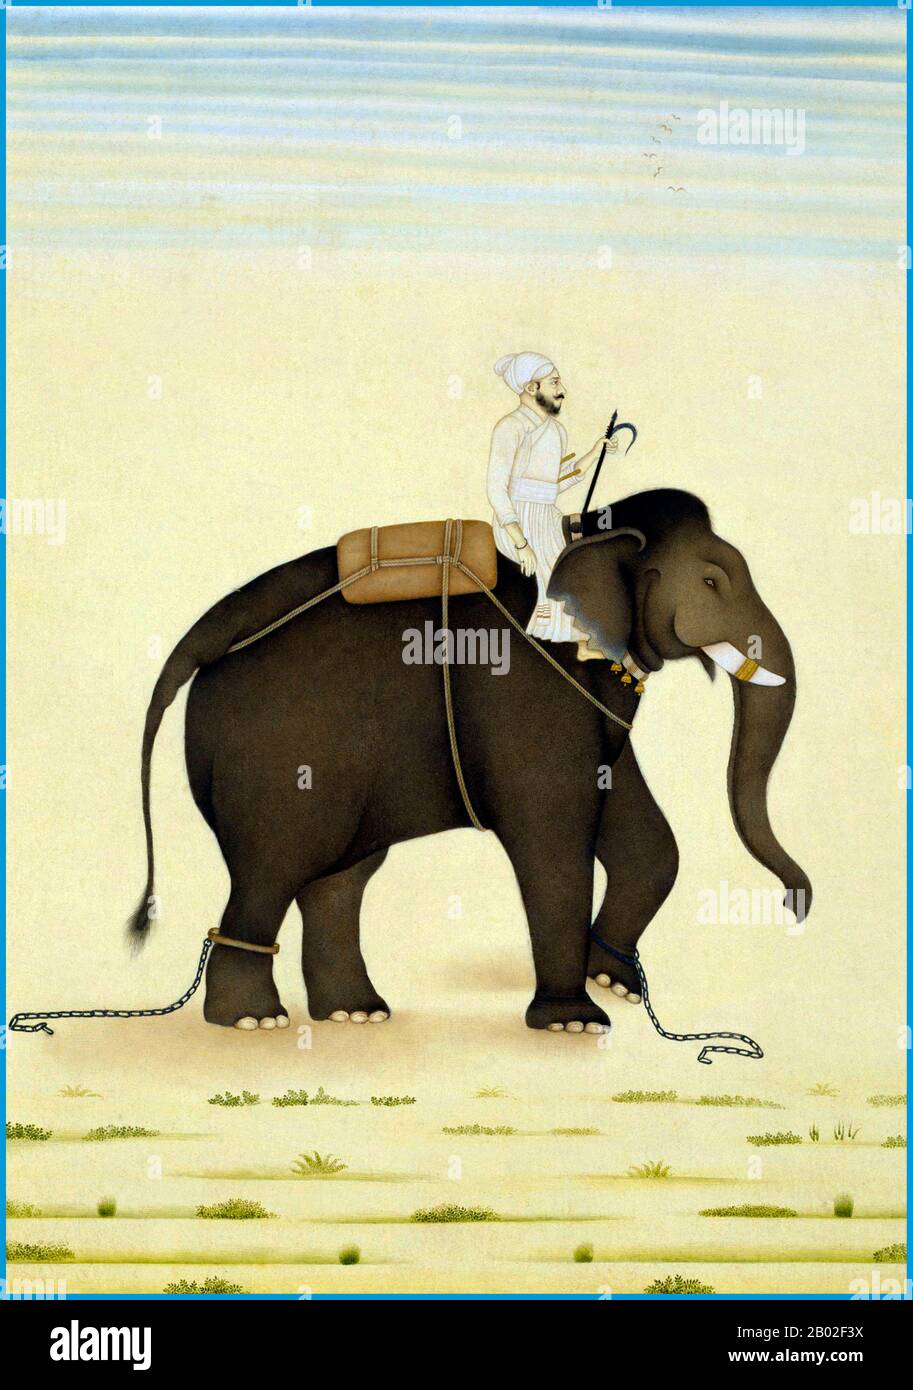 Der indische Elefant (Elephas maximus indicus) ist eine von drei anerkannten Arten des asiatischen Elefanten und auf dem asiatischen Festland heimisch. Im Allgemeinen sind asiatische Elefanten kleiner als afrikanische Elefanten und haben den höchsten Körperpunkt auf dem Kopf. Die Spitze ihres Stammes hat einen fingerartigen Vorgang. Ihr Rücken ist konvex oder waagerecht. Indische Elefanten erreichen eine Schulterhöhe zwischen 2 und 3,5 m (6,6 und 11,5 ft), wiegen zwischen 2.000 und 5.000 kg (4.400 und 11.000 lb) und haben 19 Rippenpaare. Ihre Hautfarbe ist heller als bei Maximus mit kleineren Flecken der Depigmentierung, aber dunkler als bei Sum Stockfoto